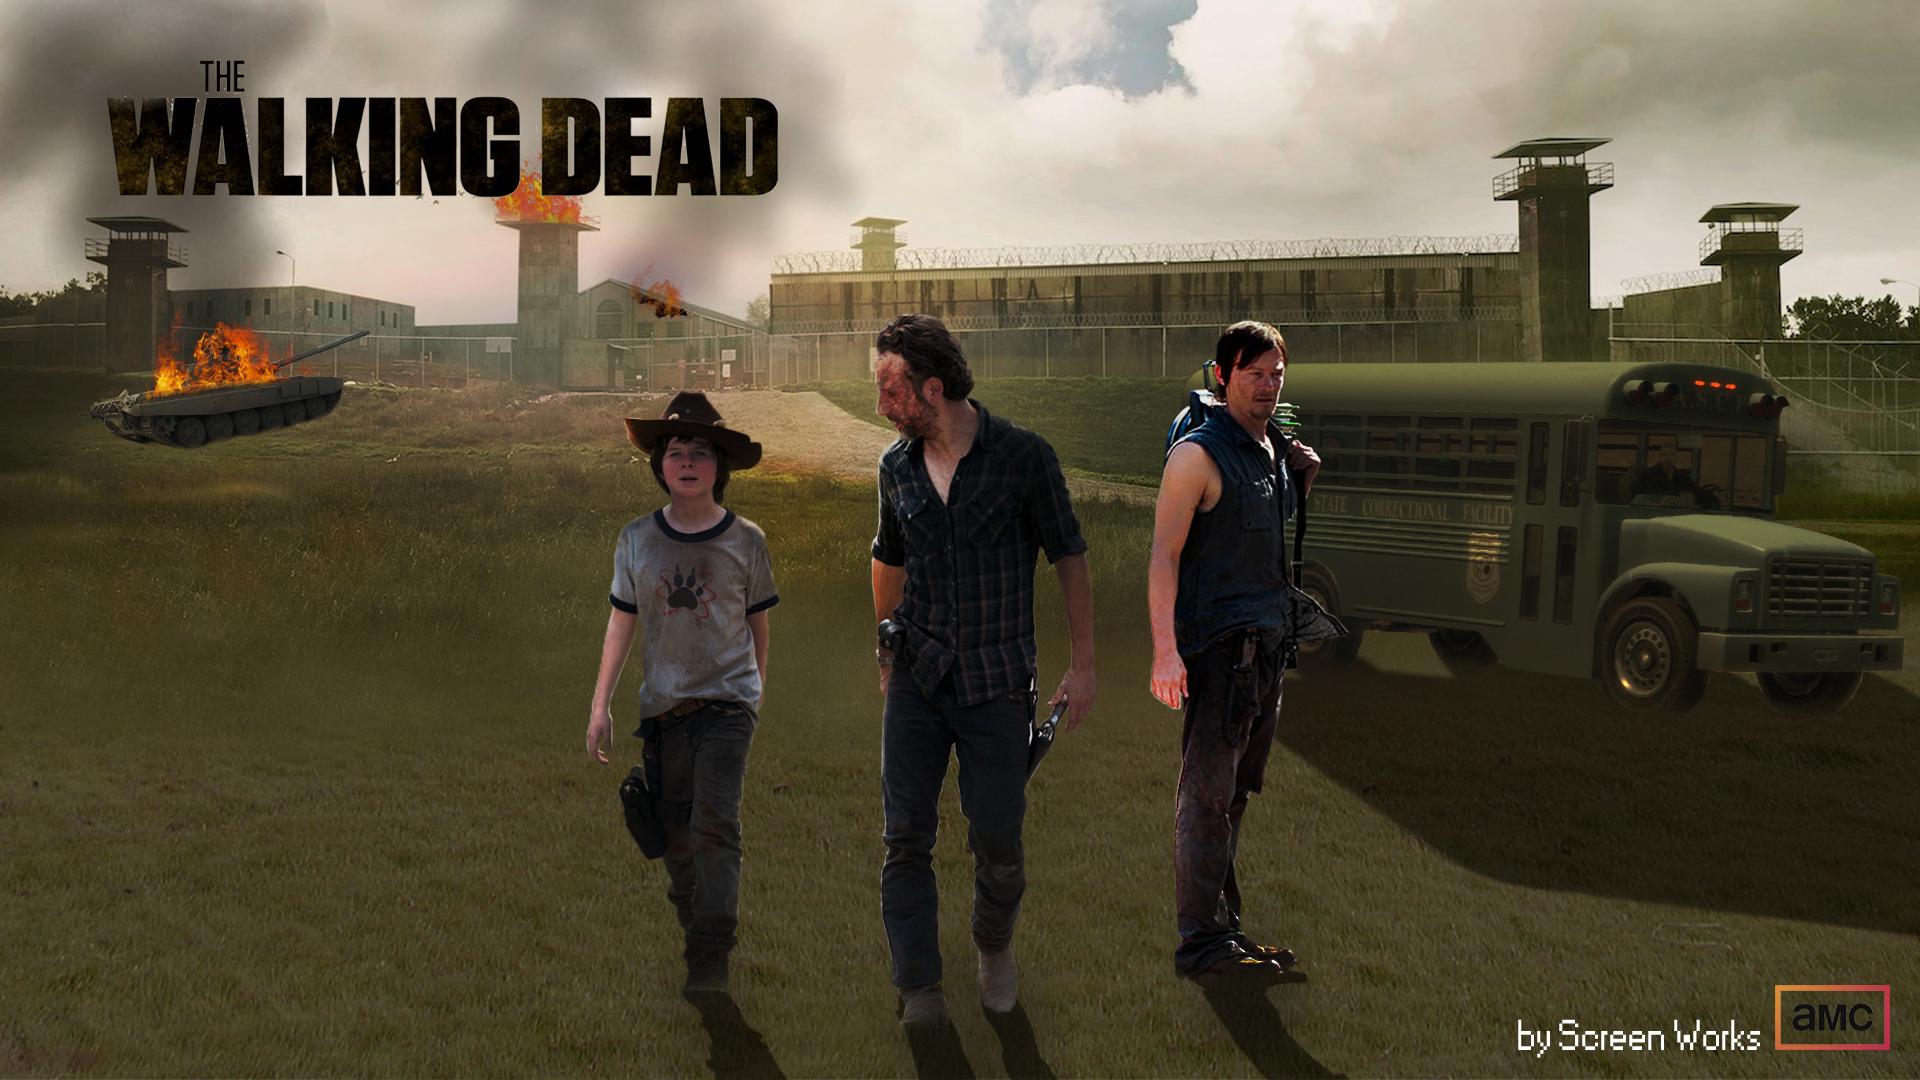 Walking Dead Season 6 Wallpaper images